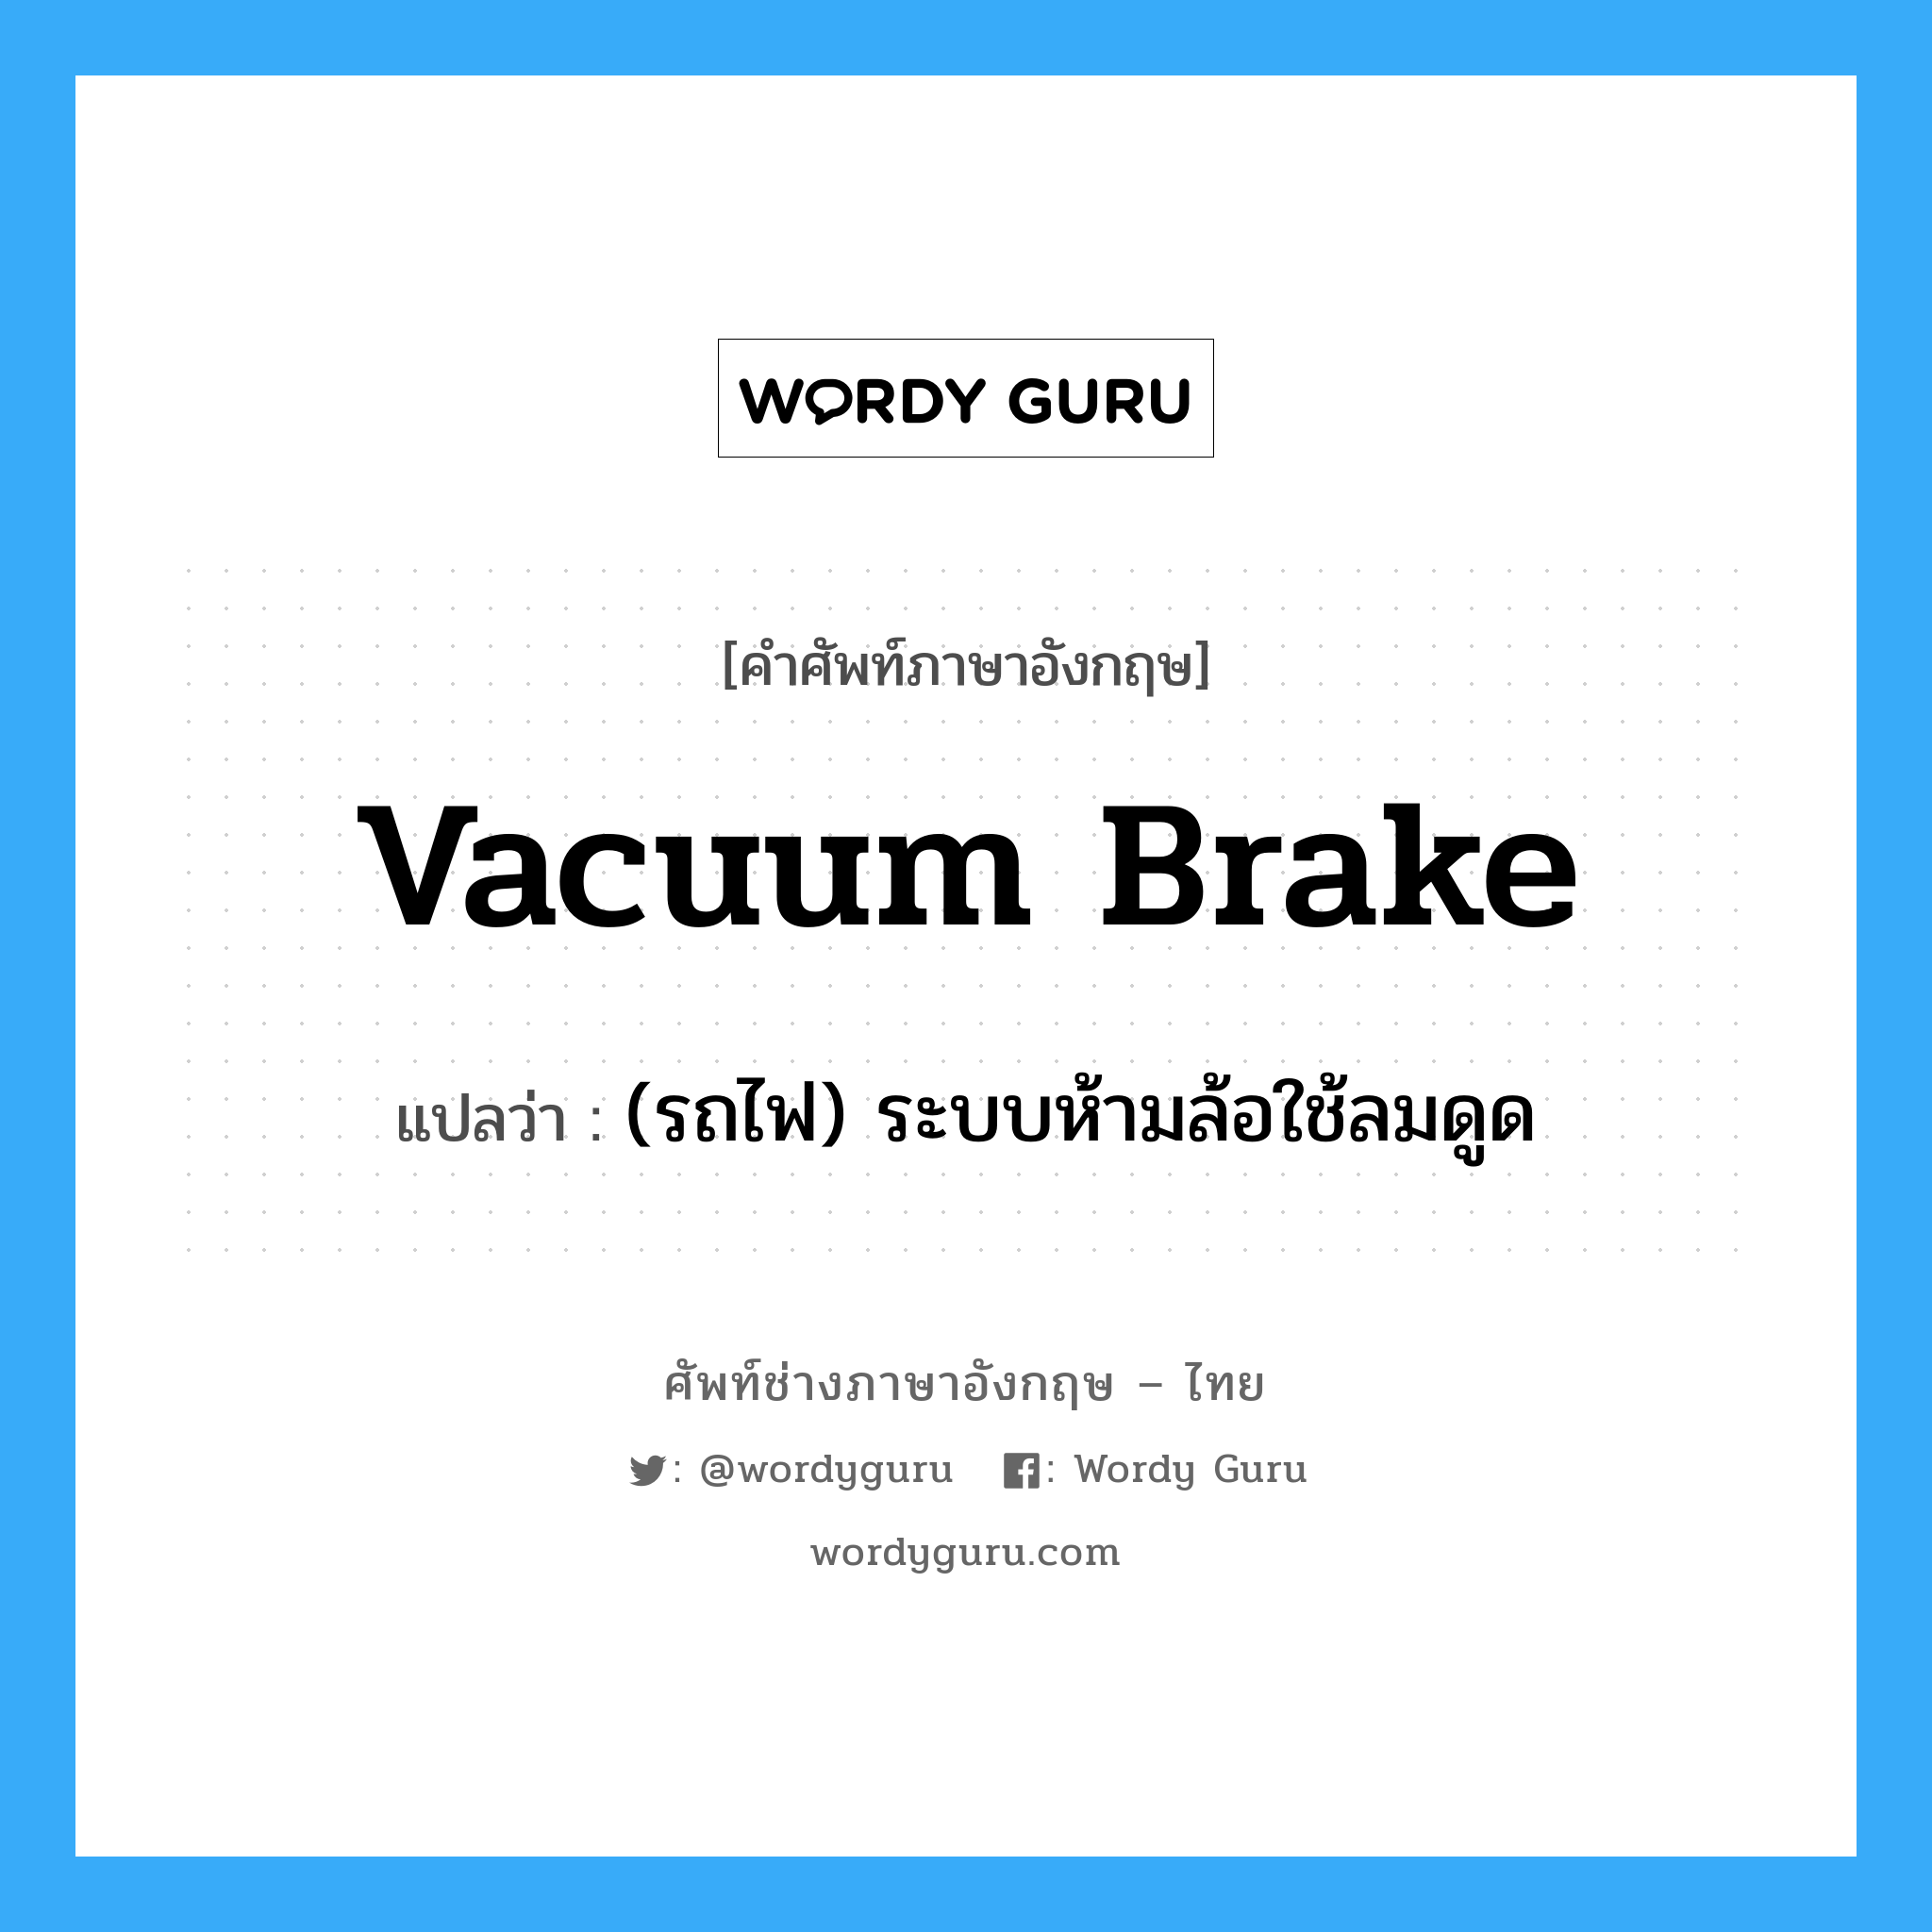 vacuum brake แปลว่า?, คำศัพท์ช่างภาษาอังกฤษ - ไทย vacuum brake คำศัพท์ภาษาอังกฤษ vacuum brake แปลว่า (รถไฟ) ระบบห้ามล้อใช้ลมดูด